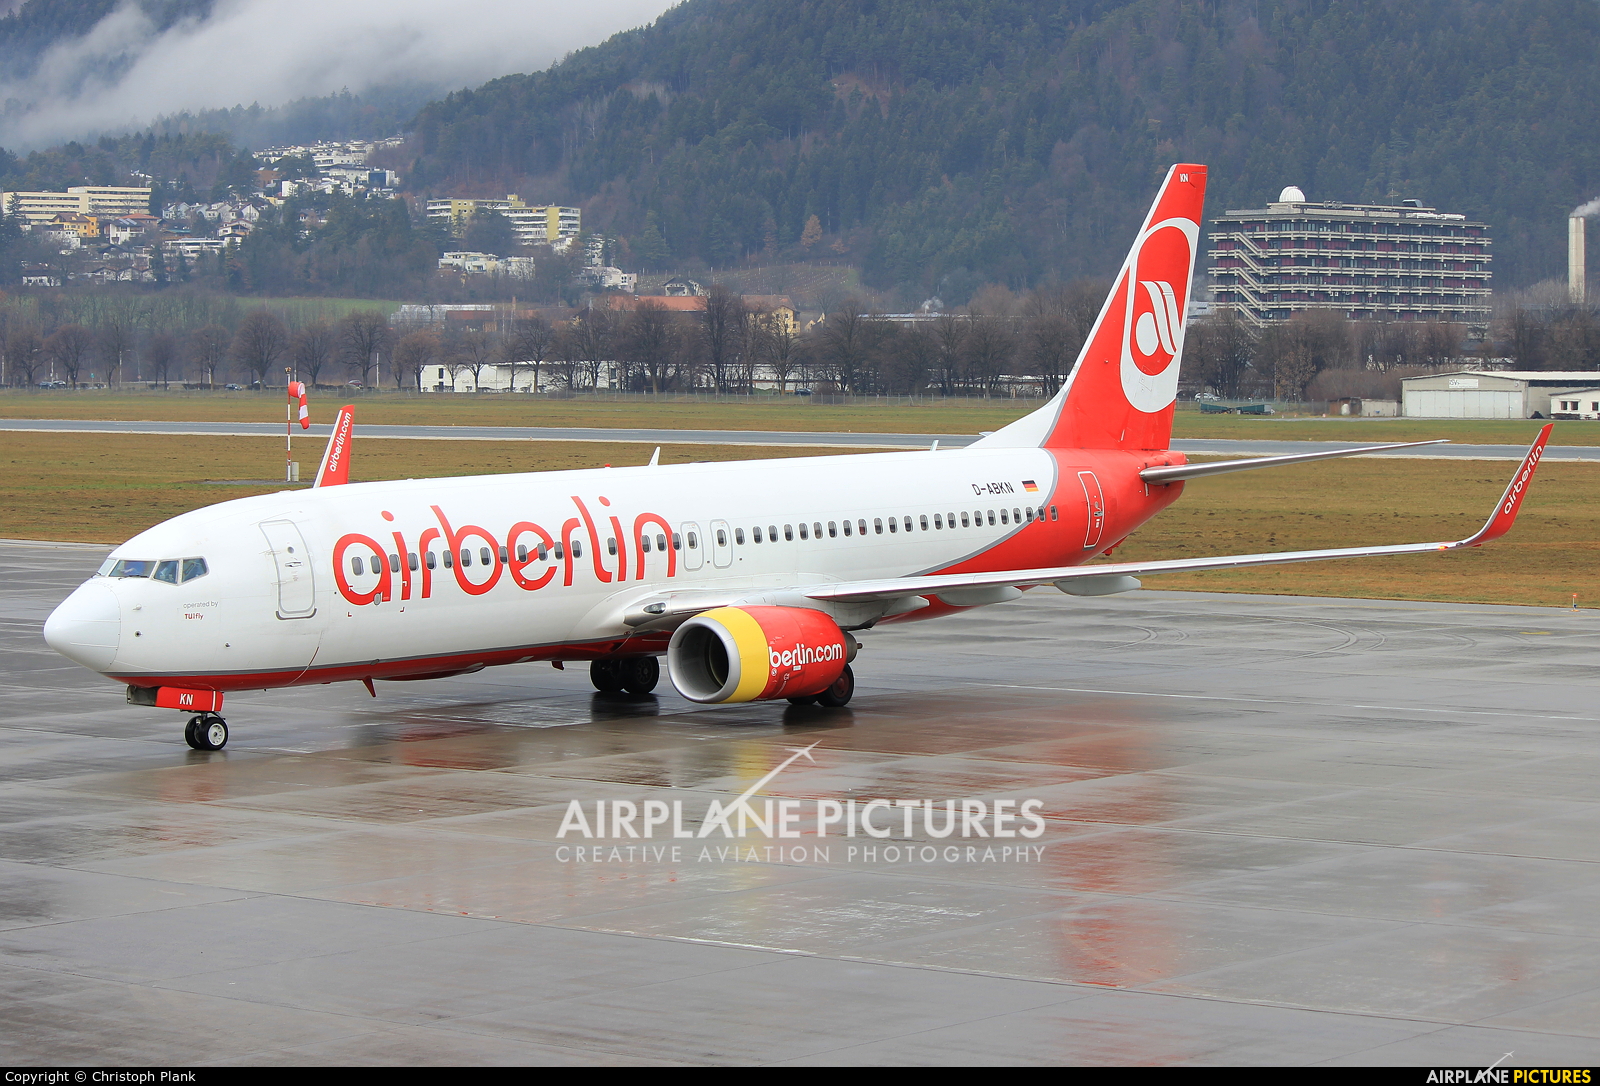 Eurowings D-ABKN aircraft at Innsbruck